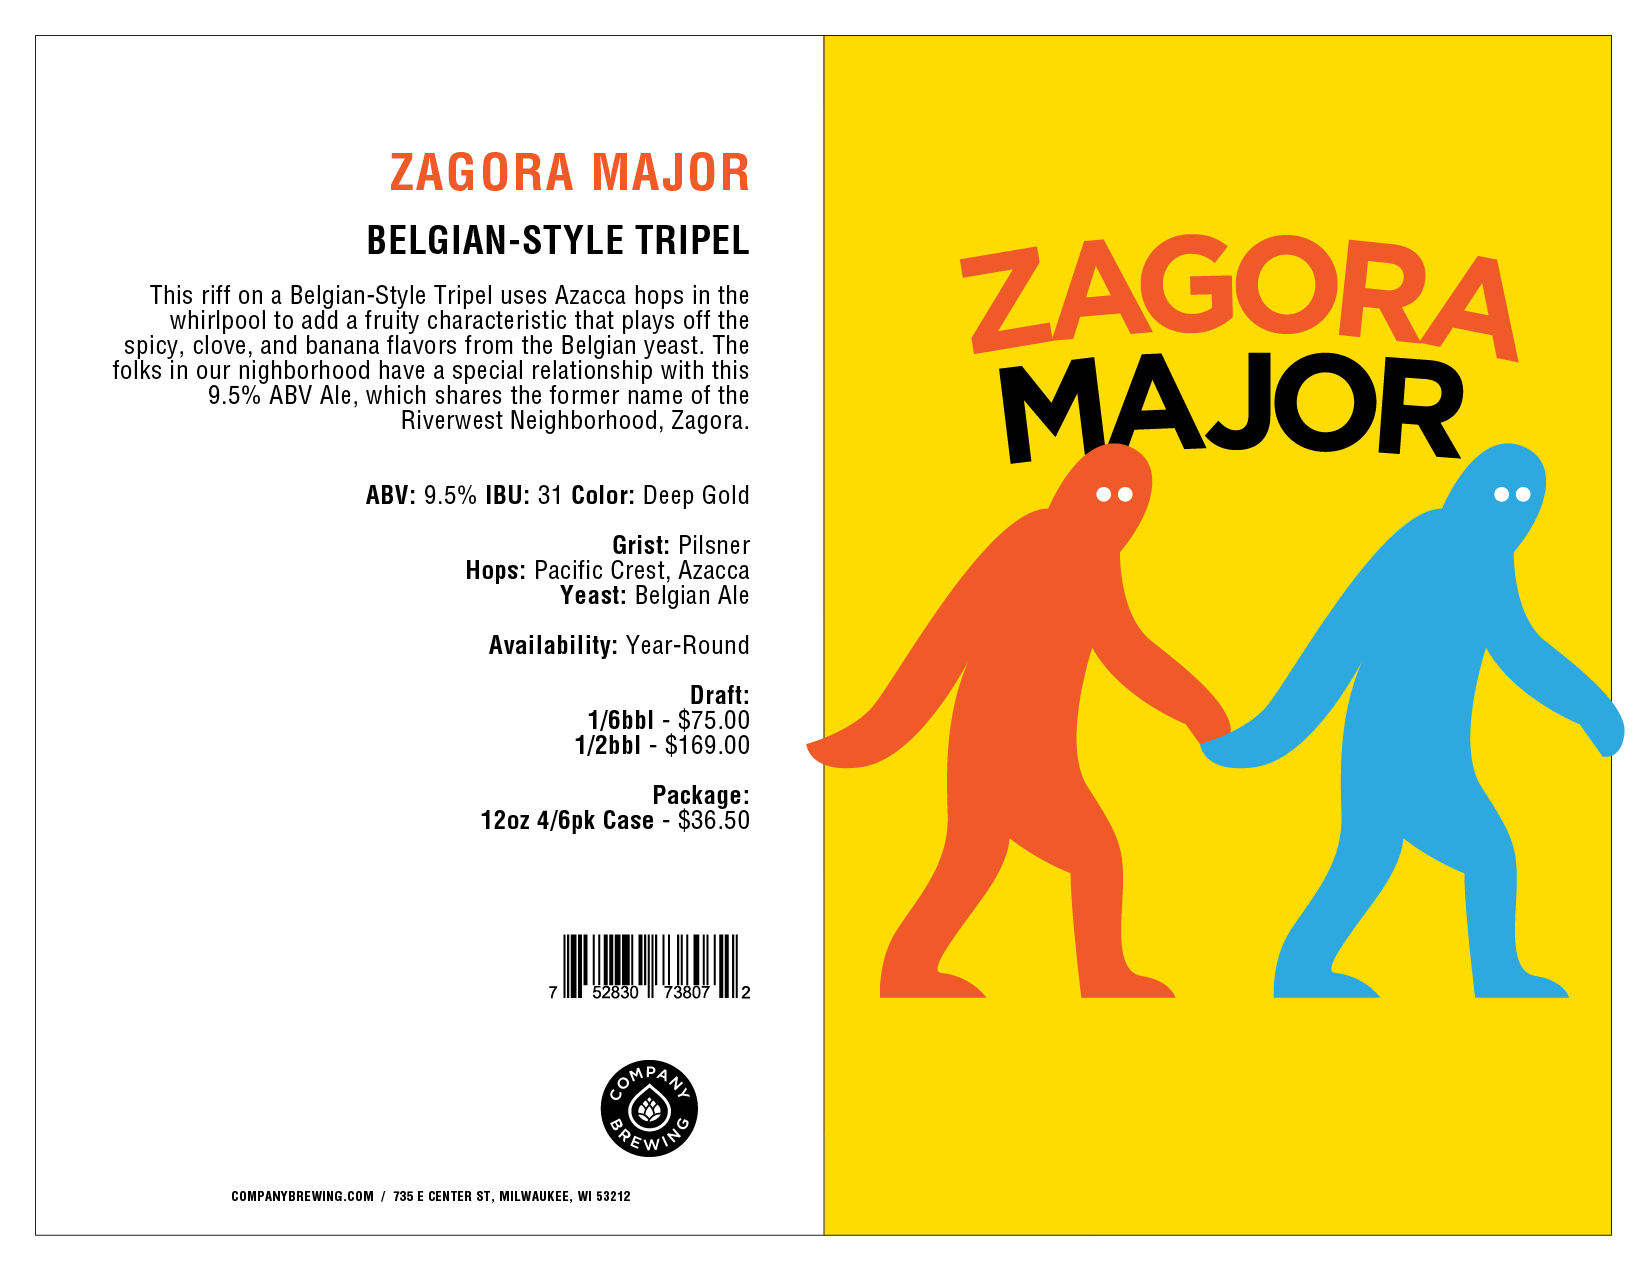 Zagora_Major_Sell-Sheet.png